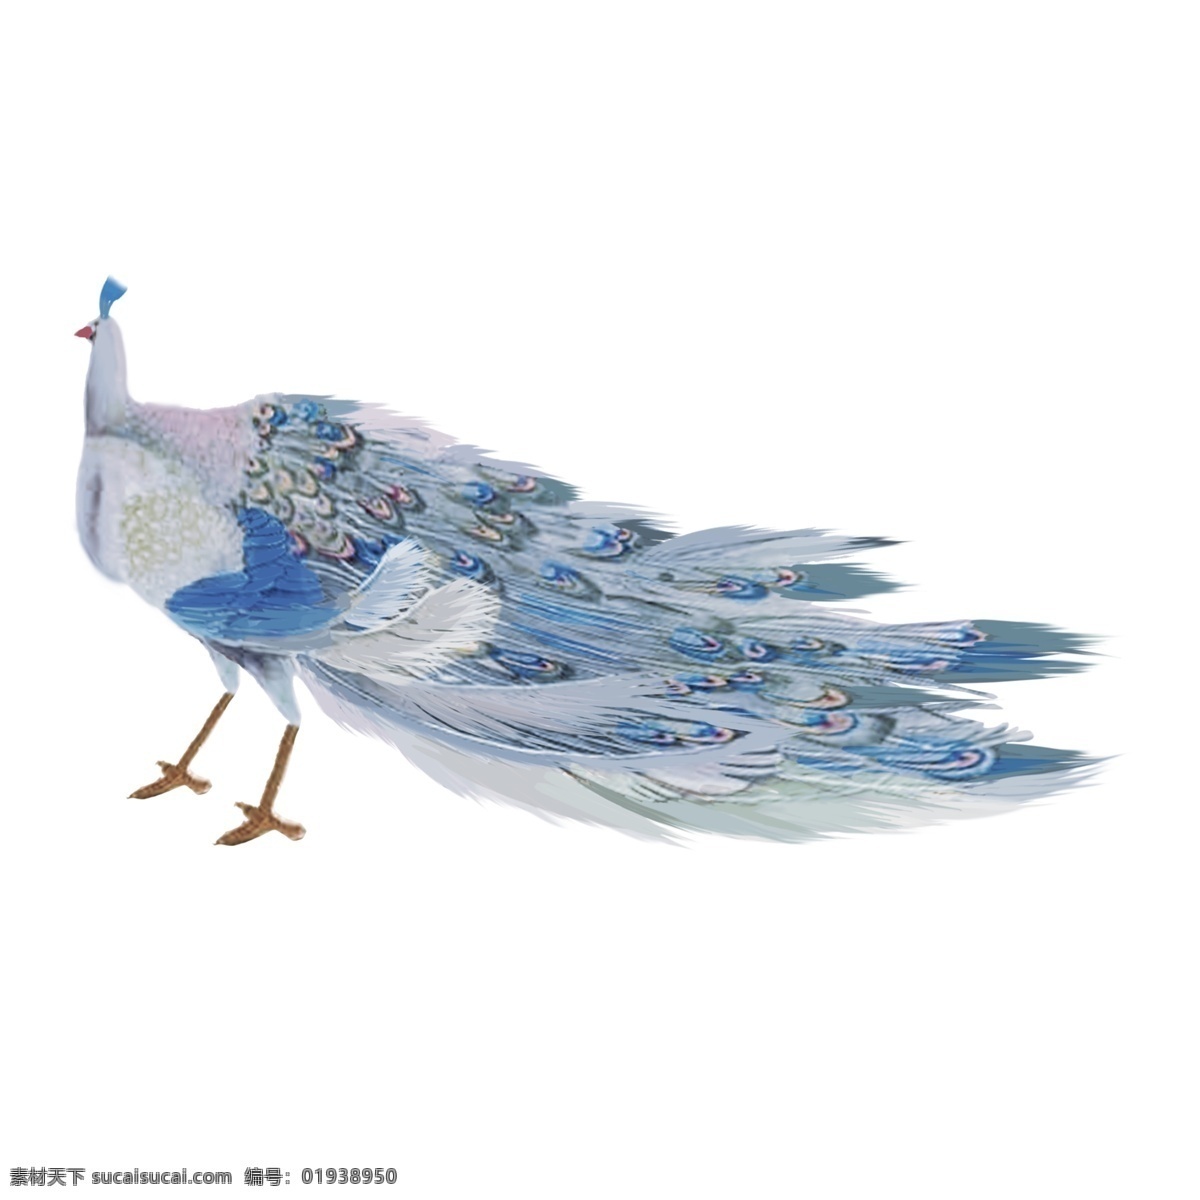 手绘 中国 风 孔雀 水墨画 动物 中国风 彩色 卡通 免抠 无背景 透明底 插画 装饰 平面设计 装饰设计